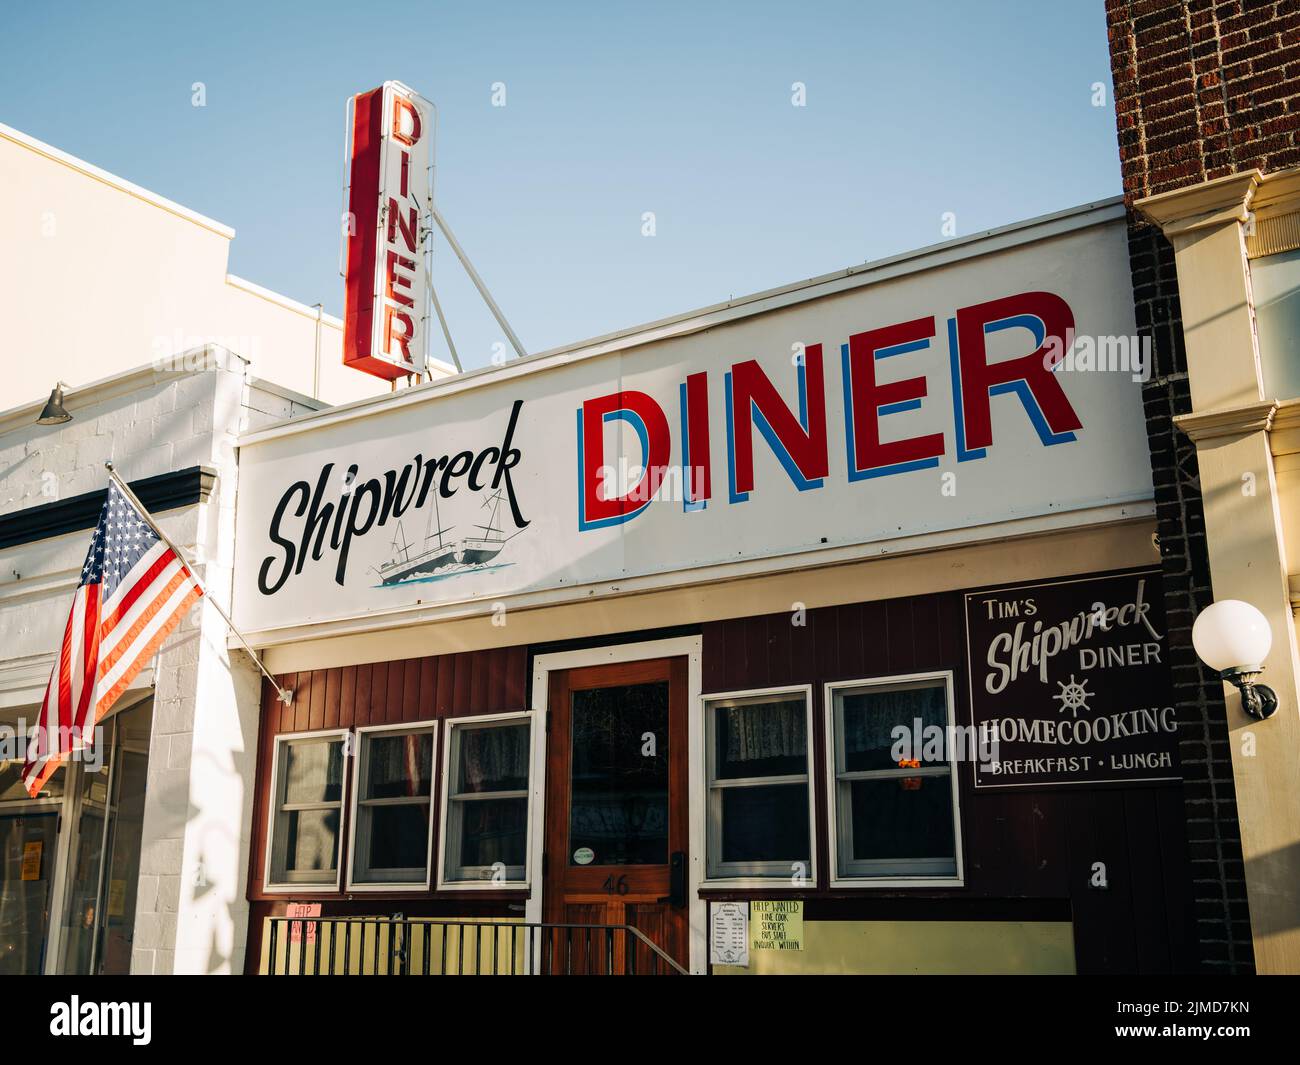 Carteles retro en Tims Shipwreck Diner, Northport, Nueva York Foto de stock